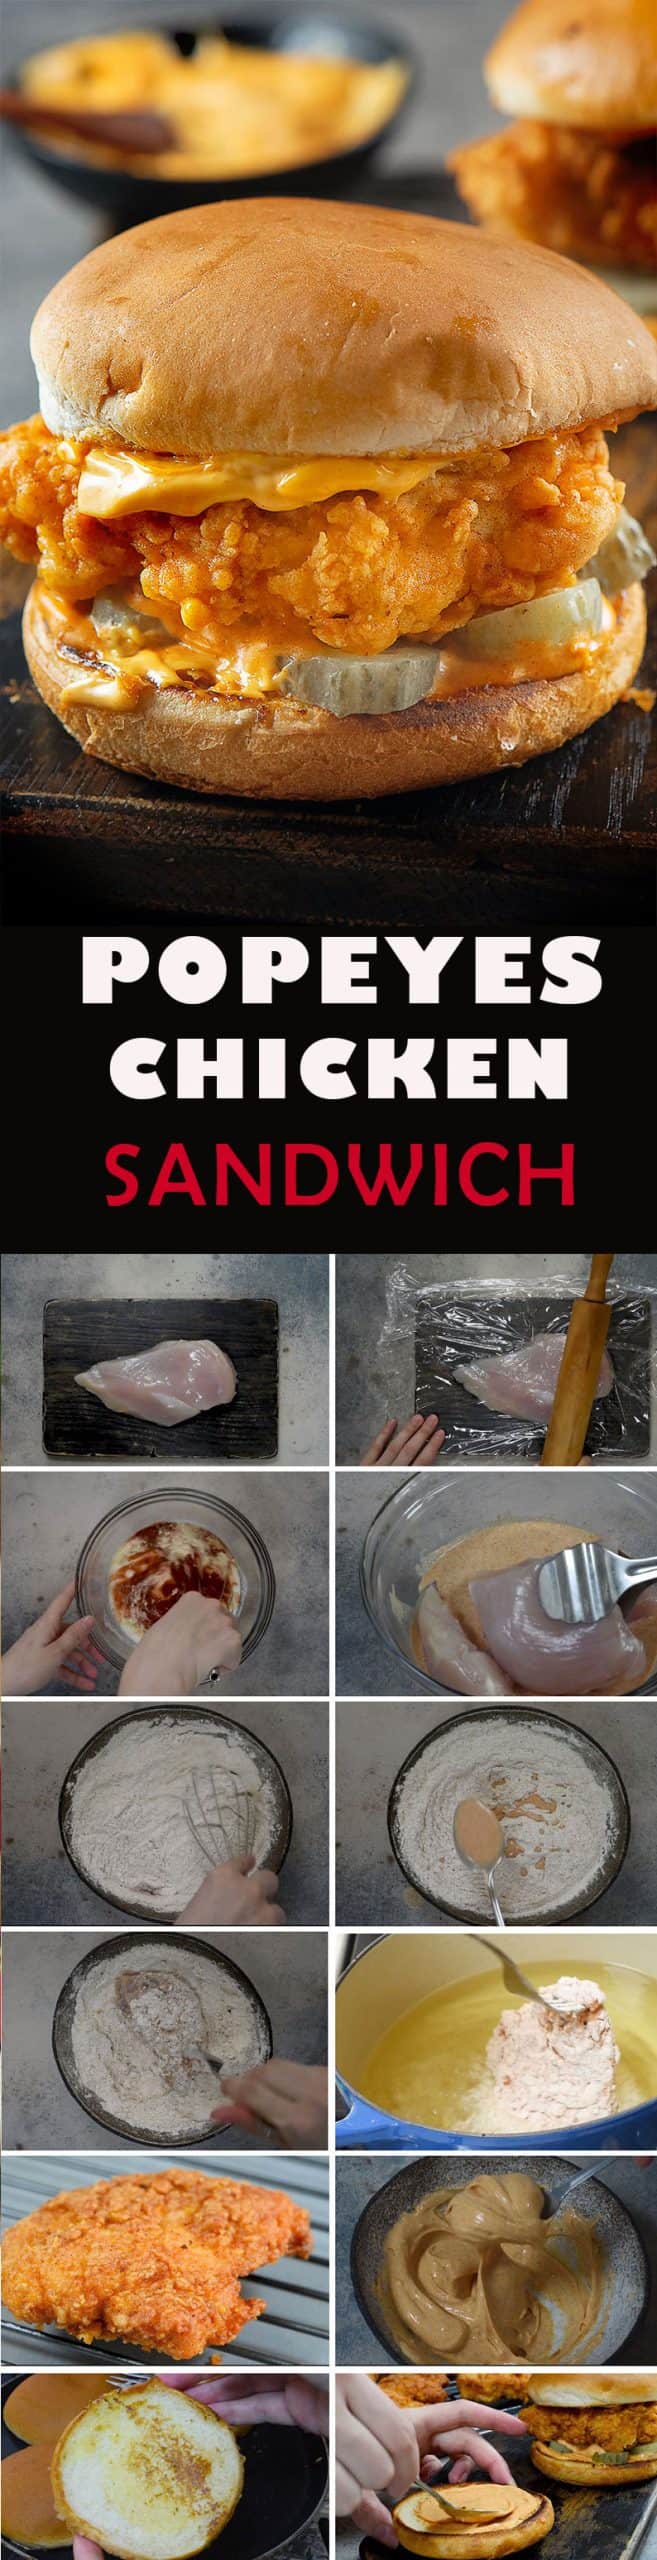 Popeyes-chicken-sandwich